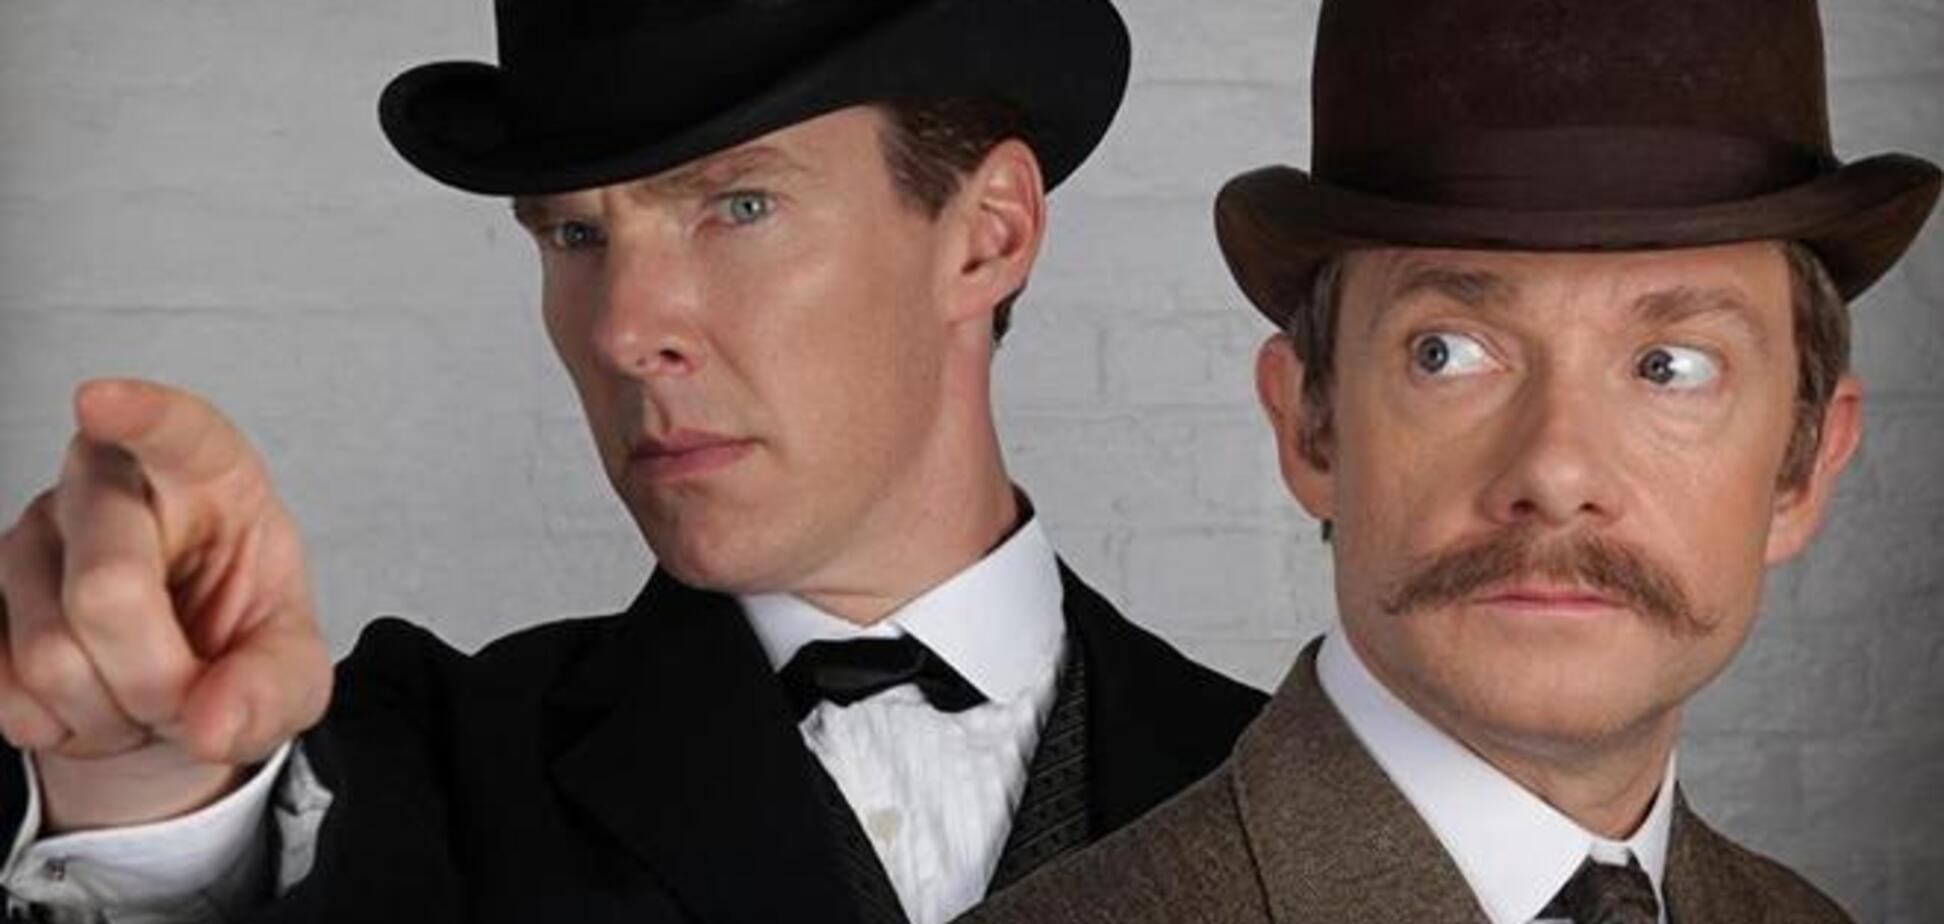 Холмс в цилиндре, Ватсон в котелке: первое фото из новой серии 'Шерлока'